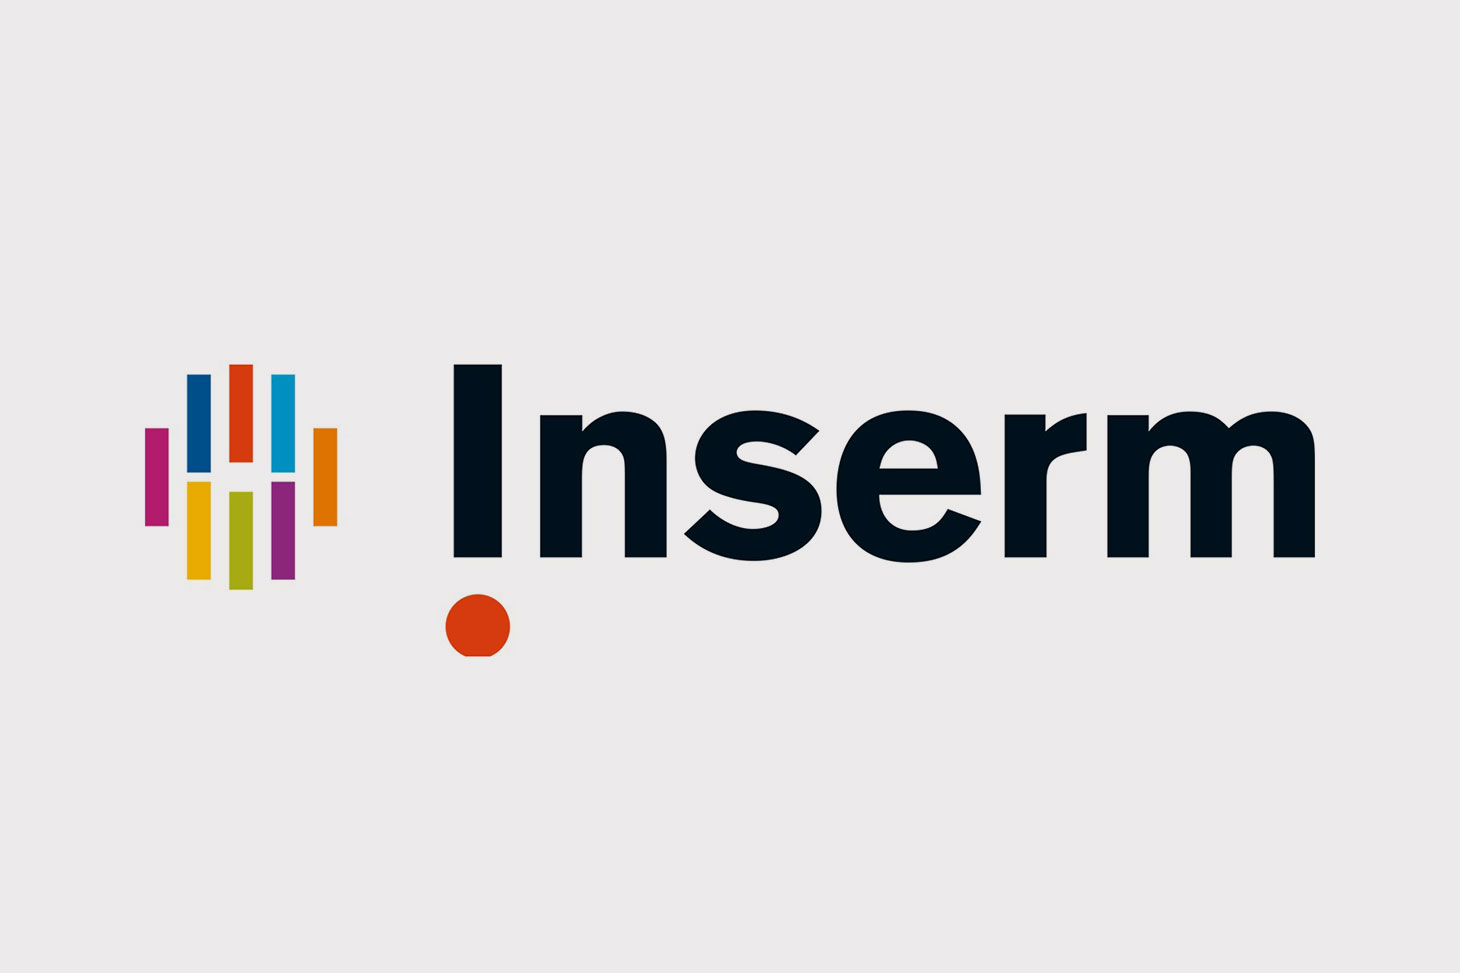 Logo de l'INSERM